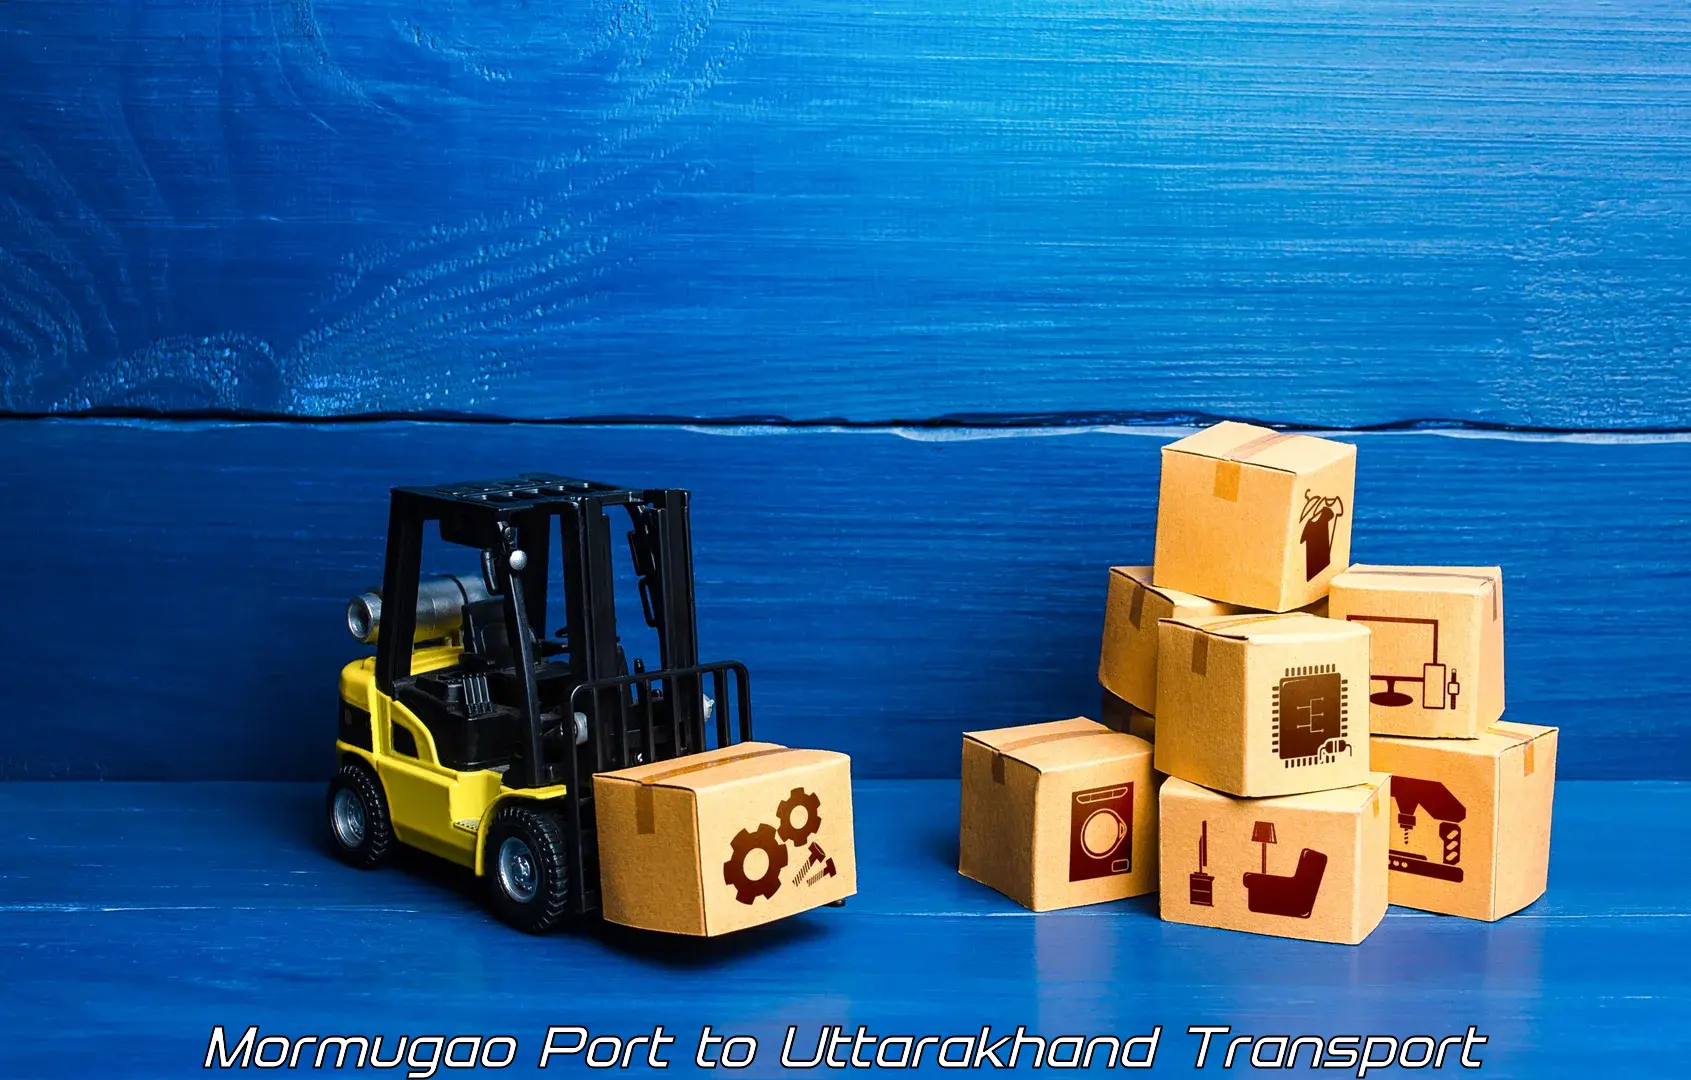 Cargo train transport services Mormugao Port to Almora